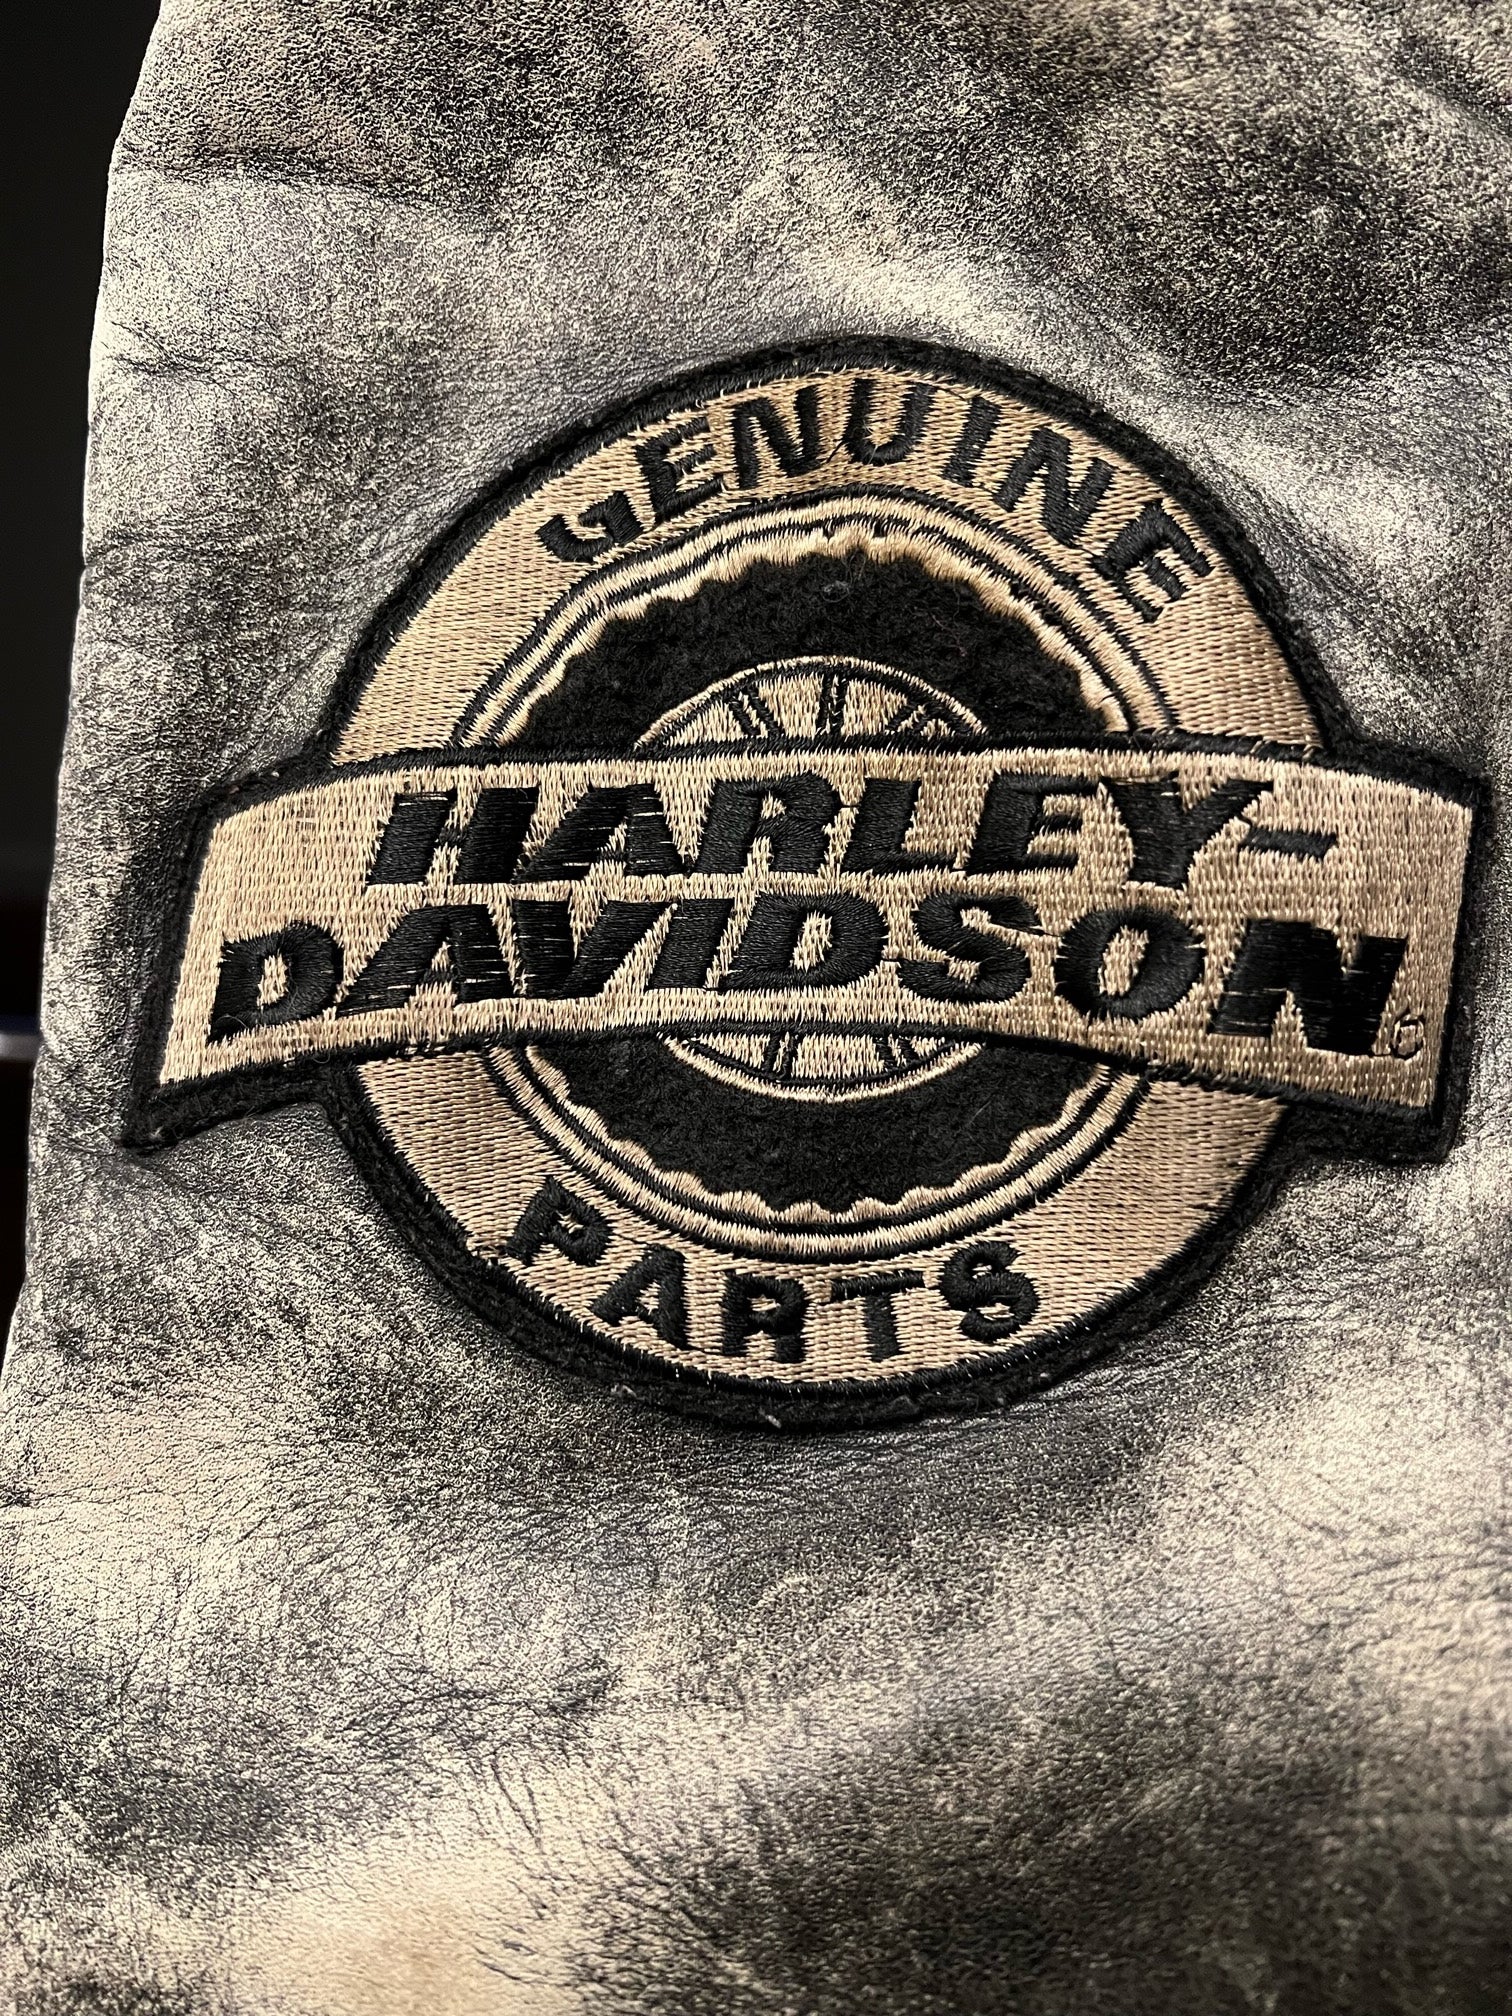 Vintage Harley Davidson Leather Jacket (Large)